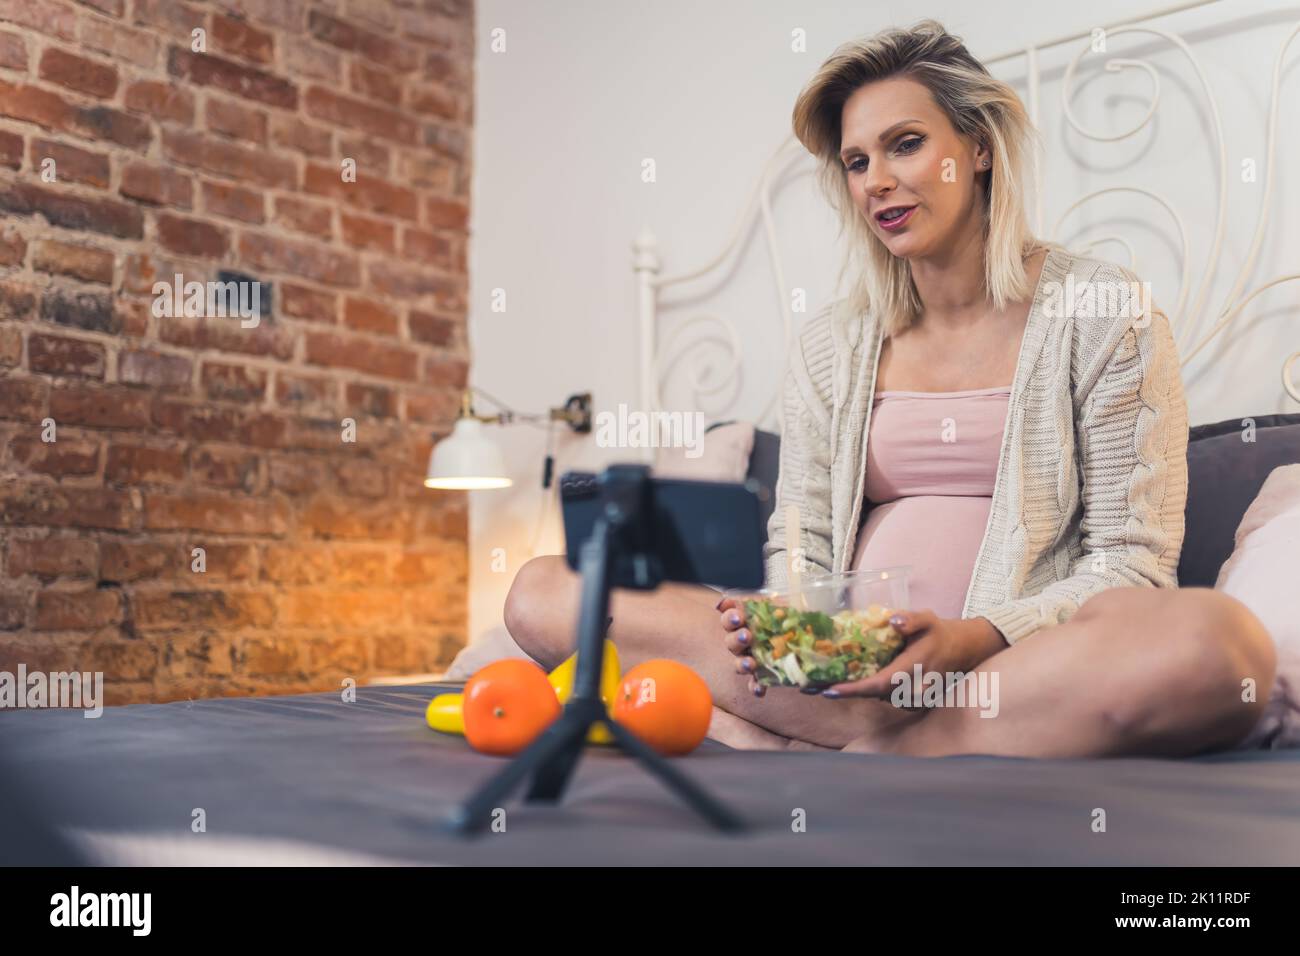 Moderna donna caucasica incinta seduta su un letto, mangiare un'insalata nutriente e snacking sulla frutta, parlando con i suoi amici in una videochiamata. Foto di alta qualità Foto Stock